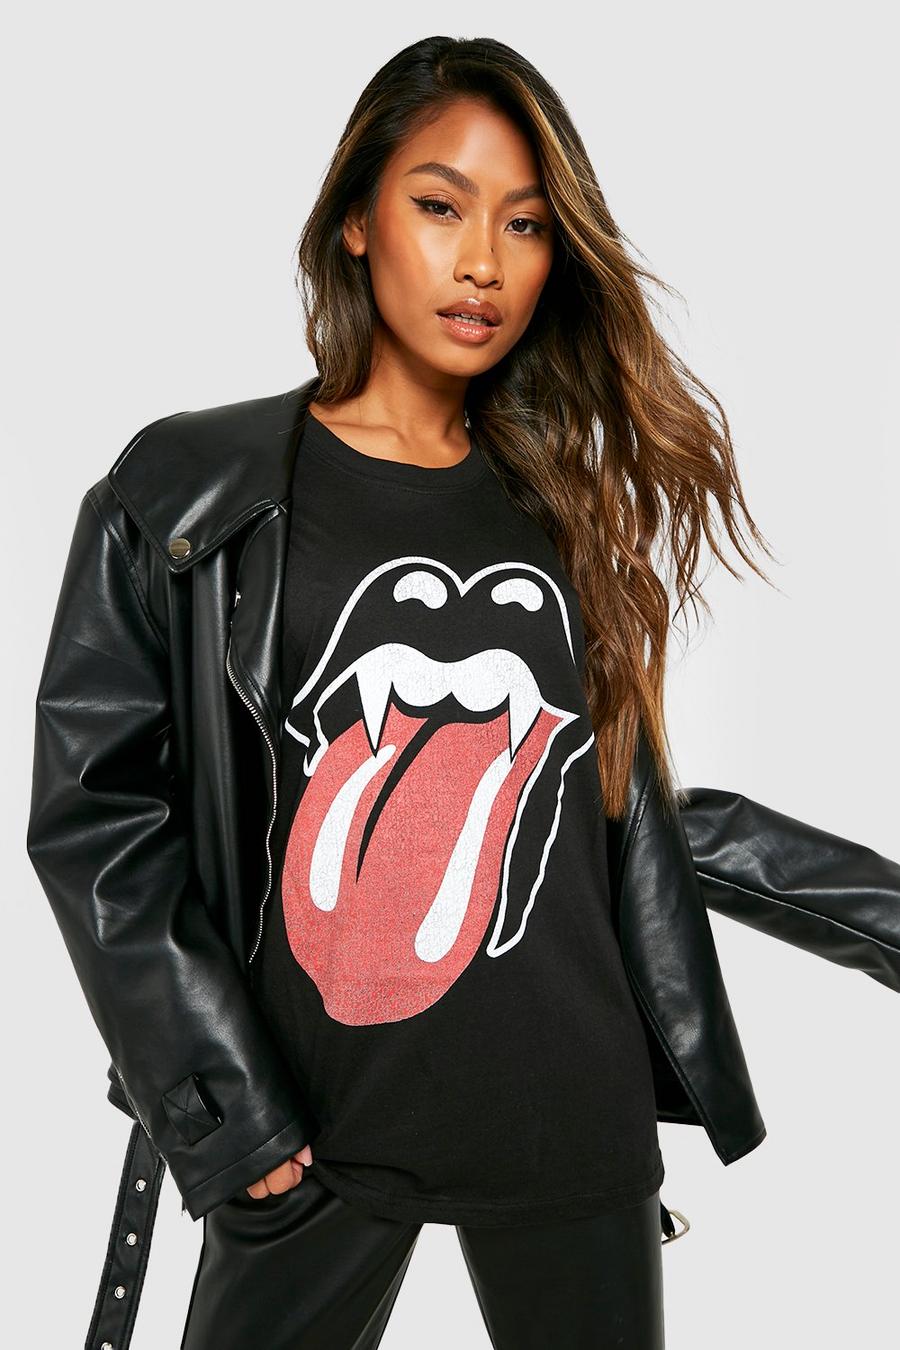 T-shirt di Halloween da vampiro con la banda dei Rolling Stones, Black